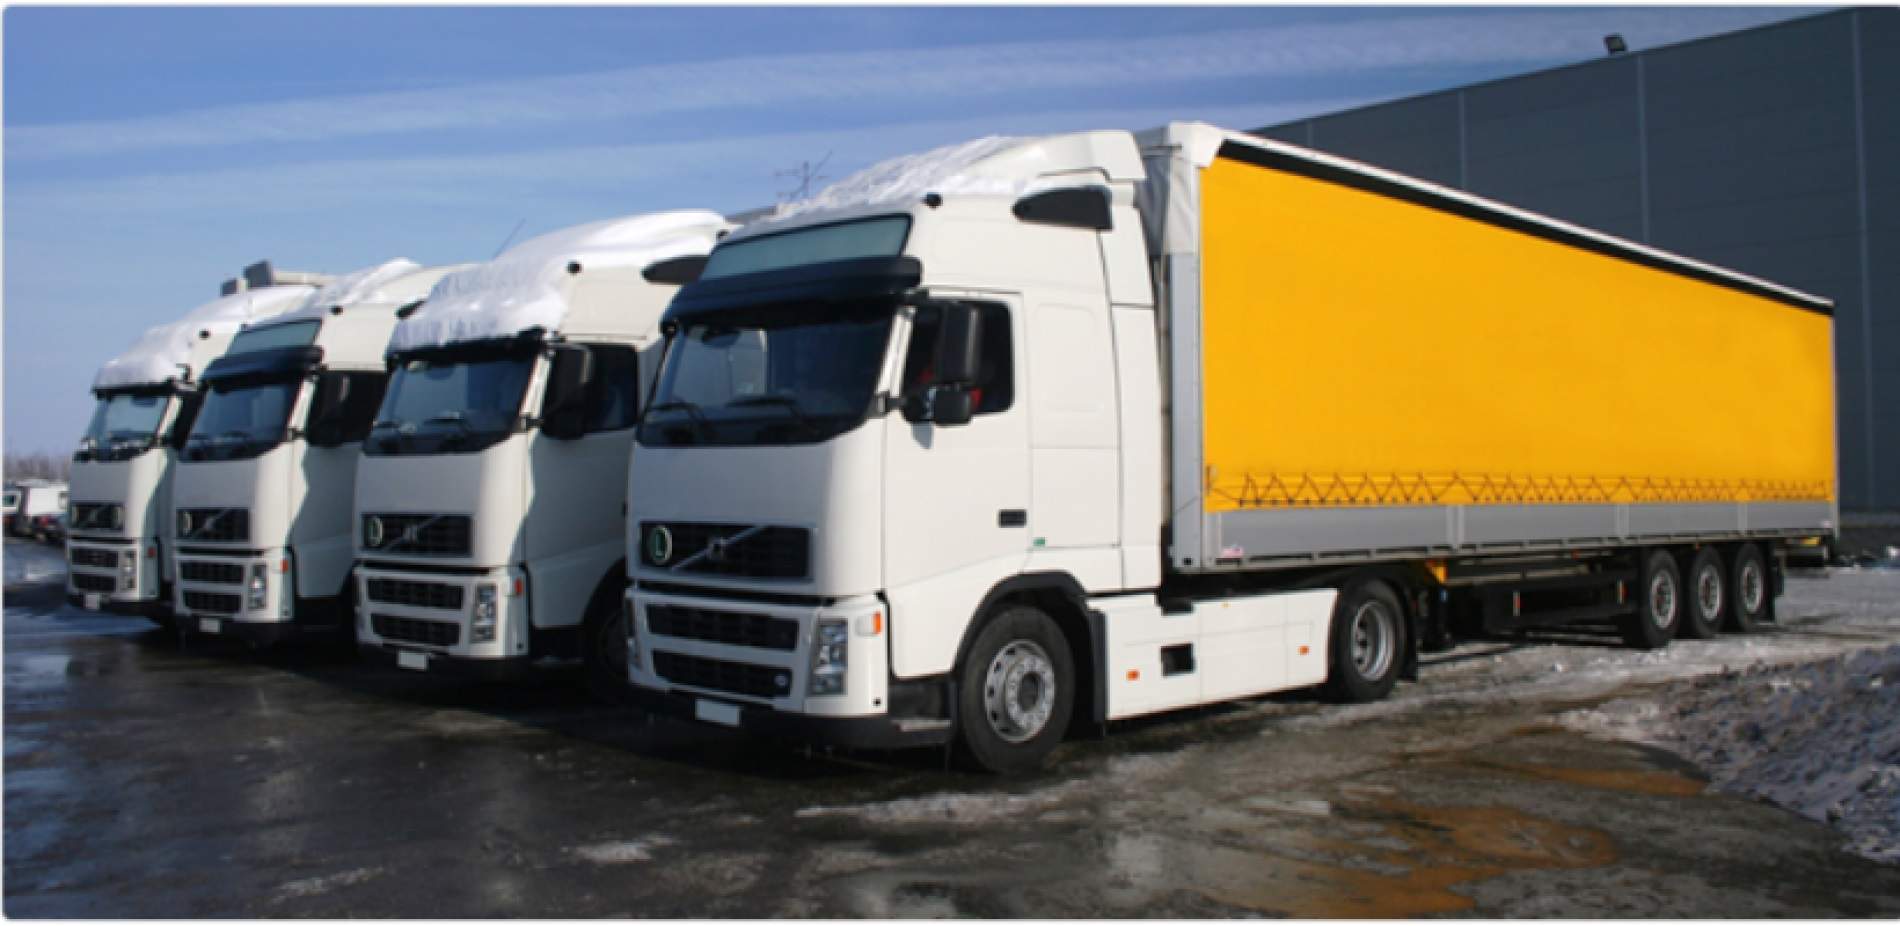 Оказываю услуги перевозки грузов. Транспортные компании в Крыму.